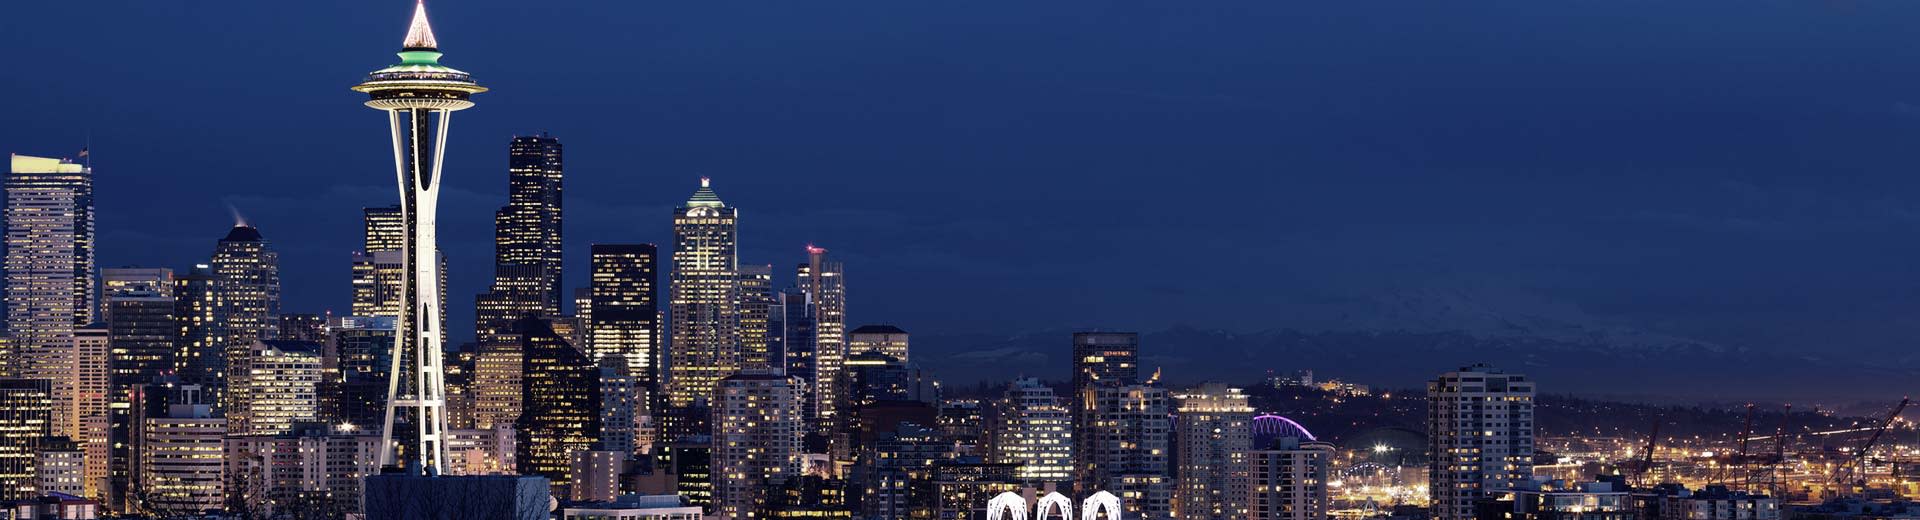 西雅图著名的太空针塔在夜空中若隐若现，周围是摩天大楼和公寓楼。